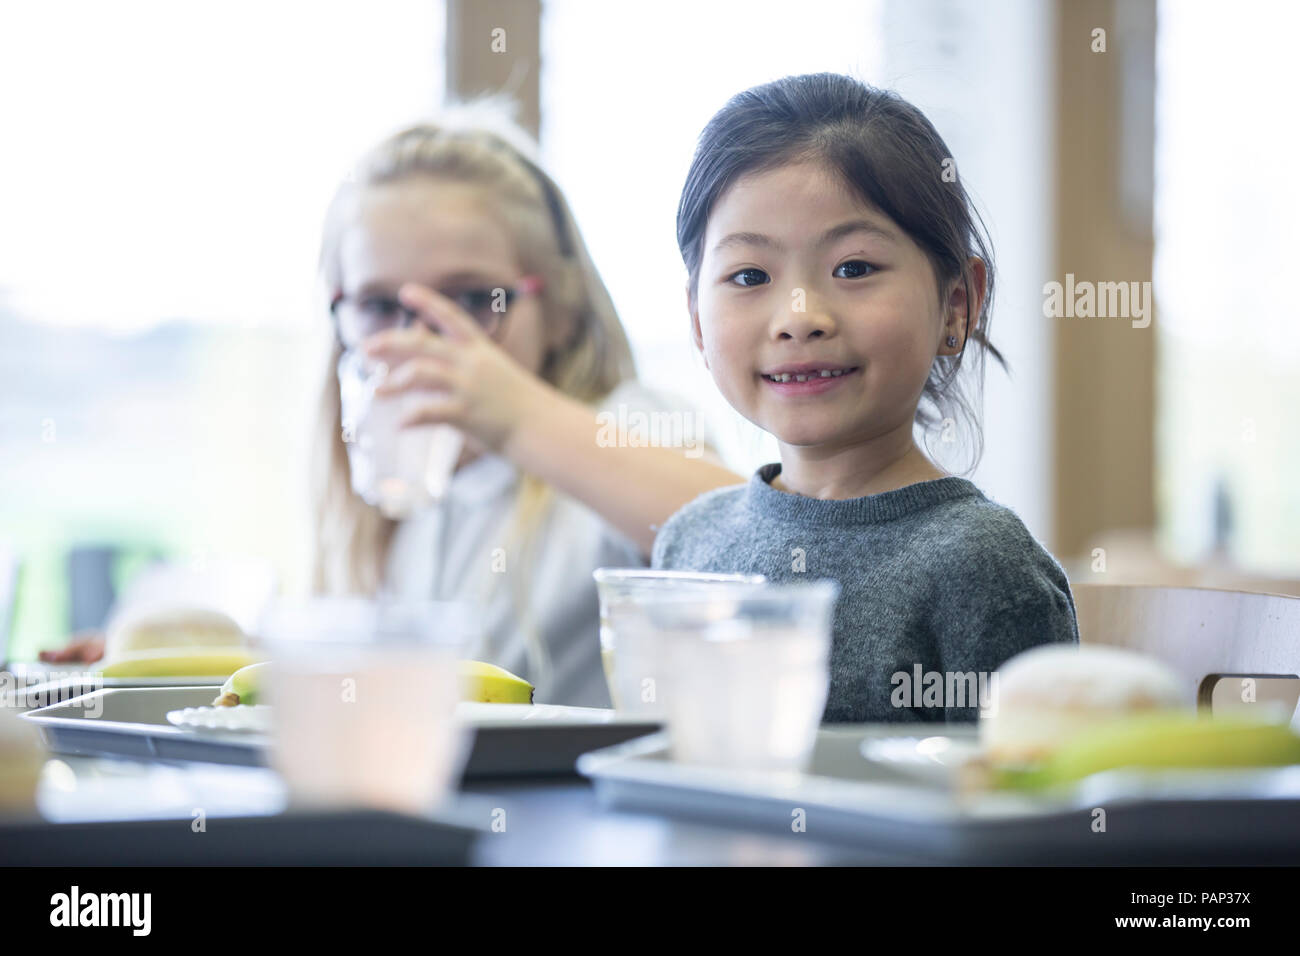 Portrait of smiling schoolgirl with classmate in school canteen Stock Photo